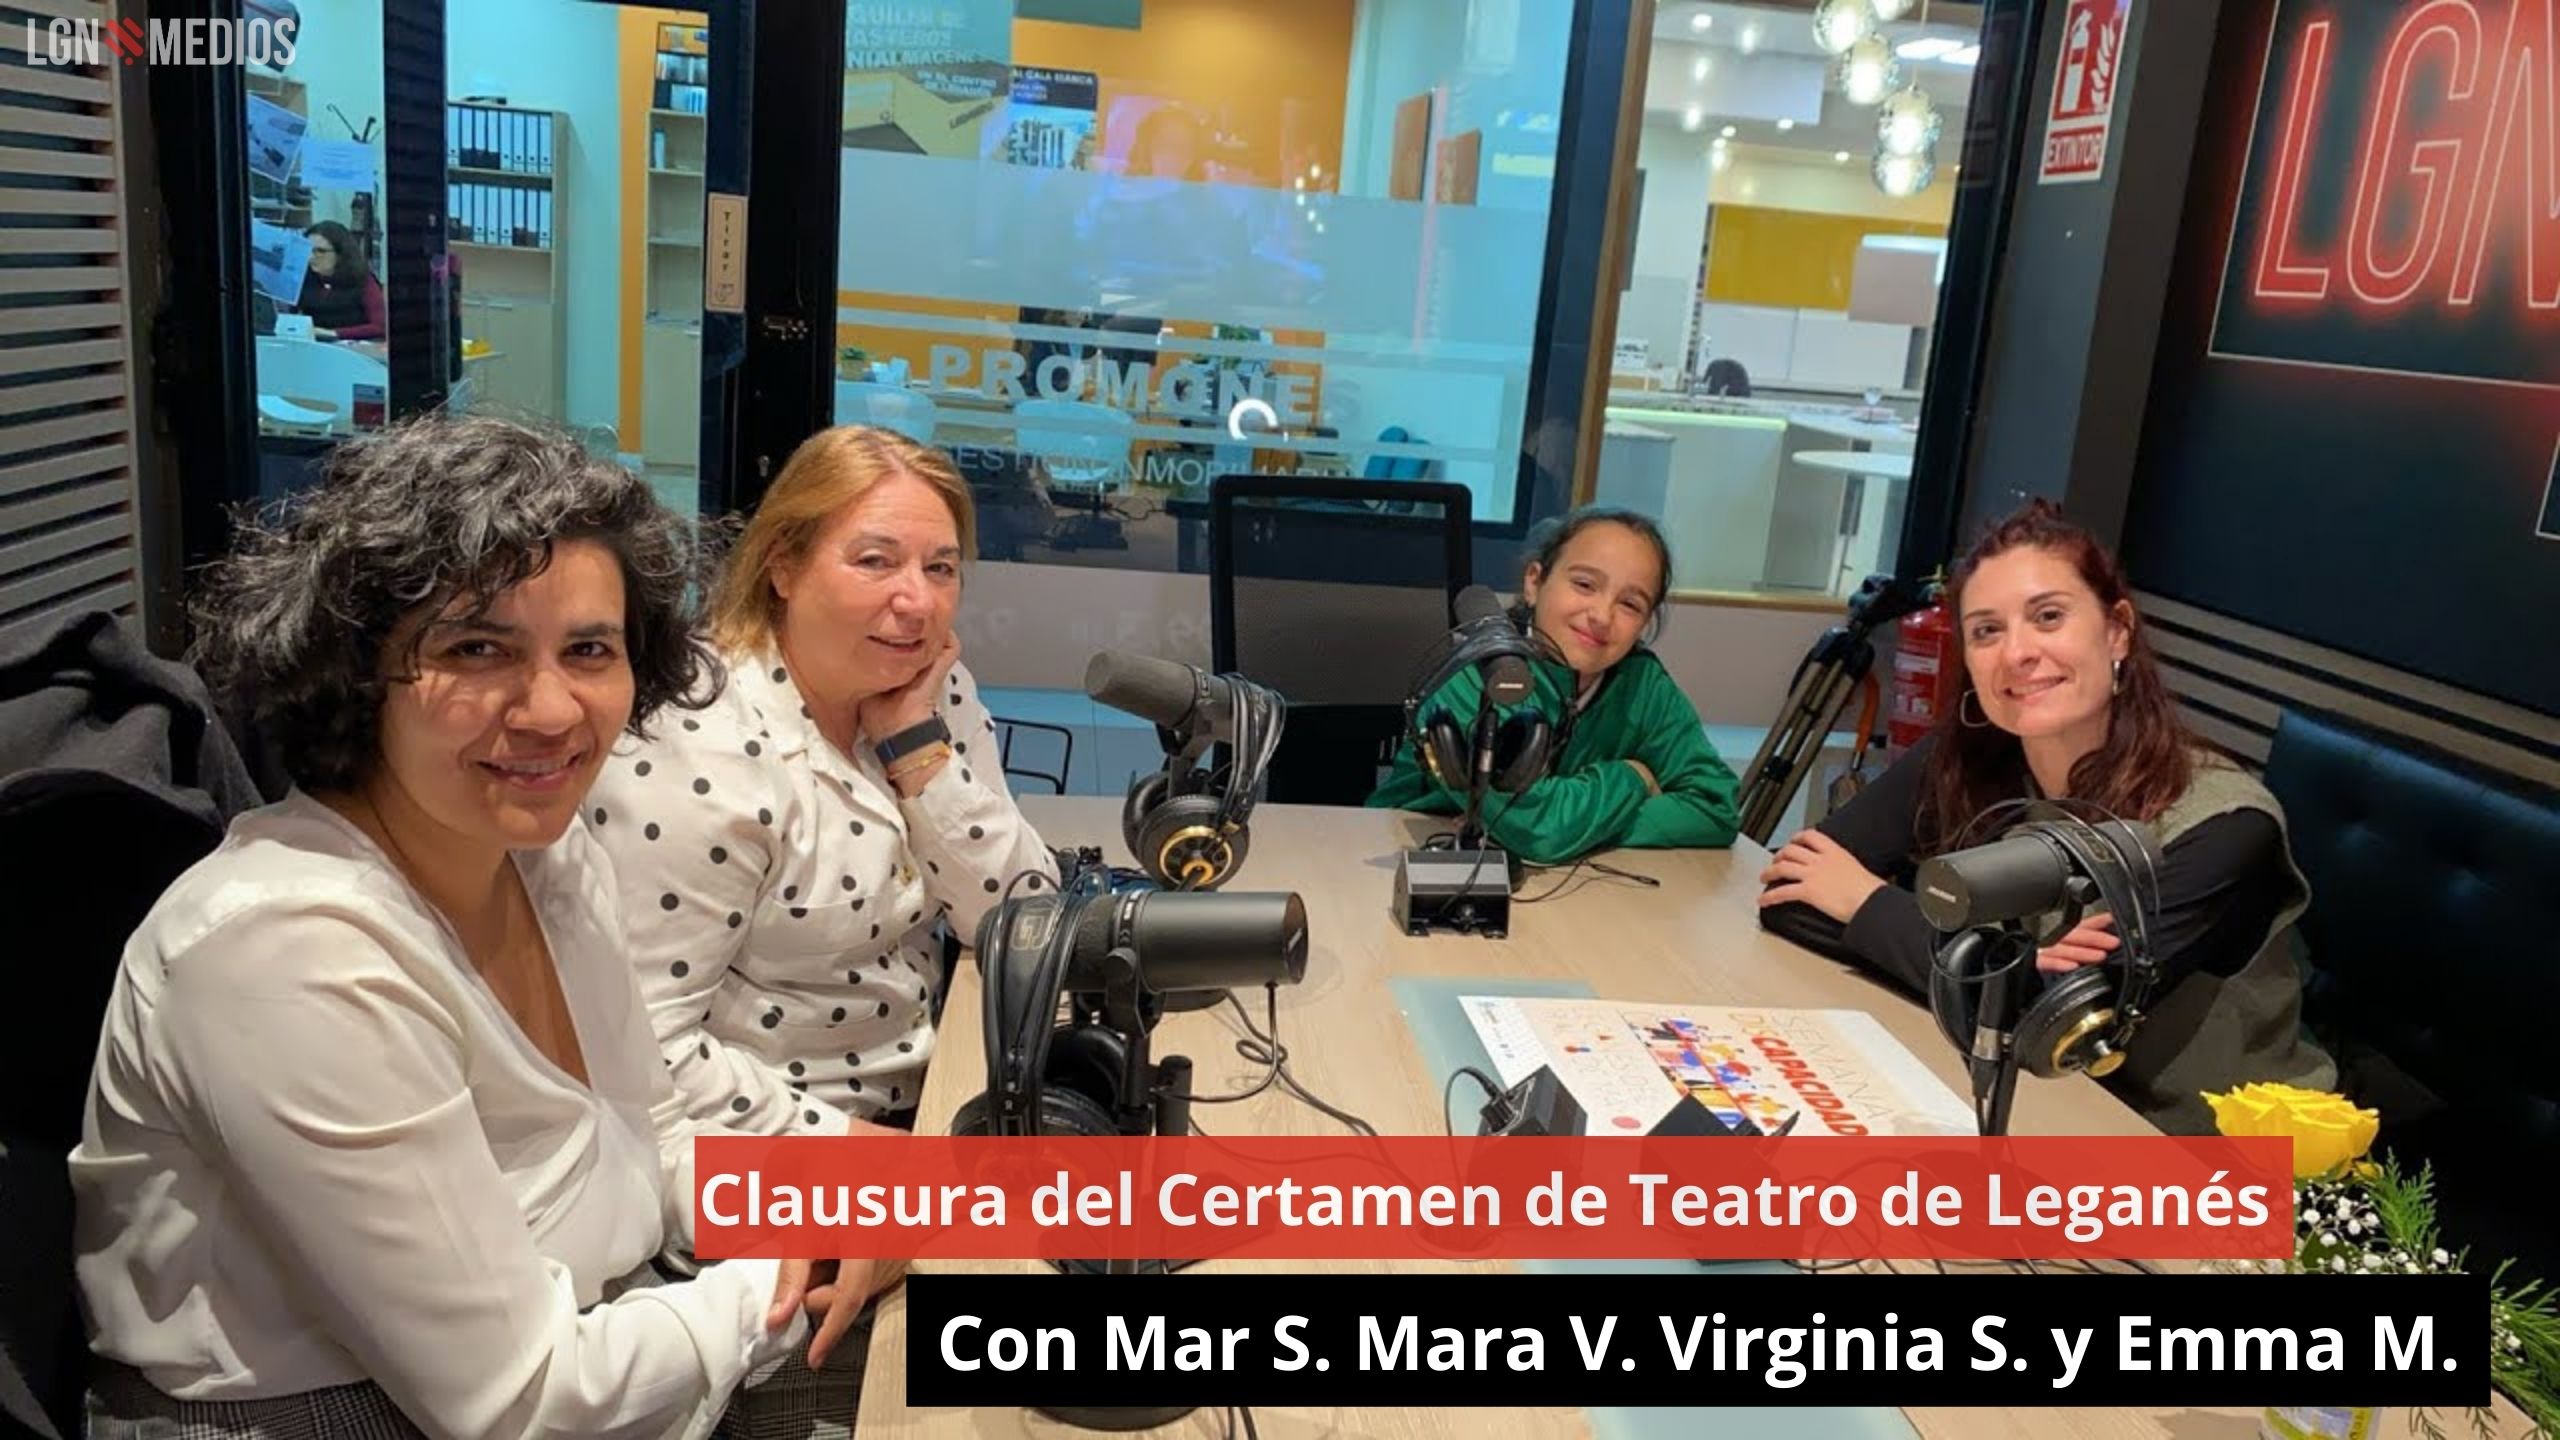 17/05/24 del Certamen de Teatro de Leganés. Con Mar S. Mara V. Virginia S. y Emma M.